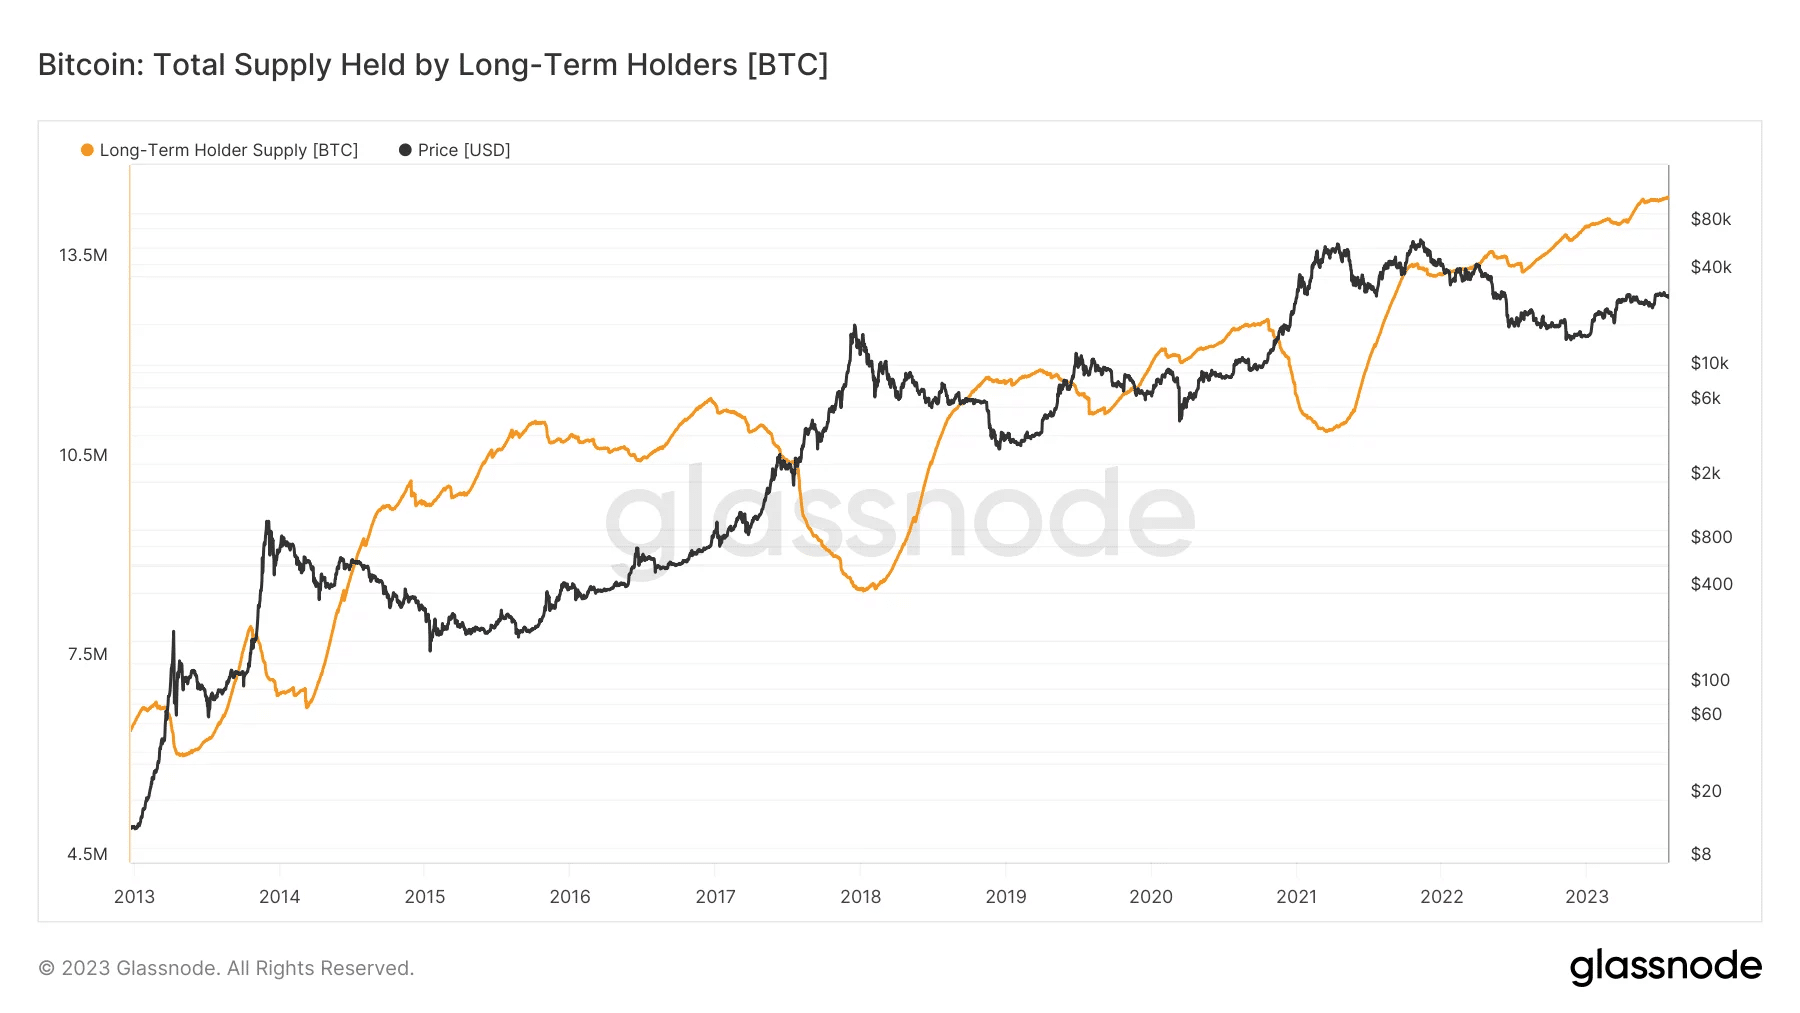 Cena Bitcoina od 2013 roku wraz z liczbą BTC posiadanych dłużej niż 6 miesięcy